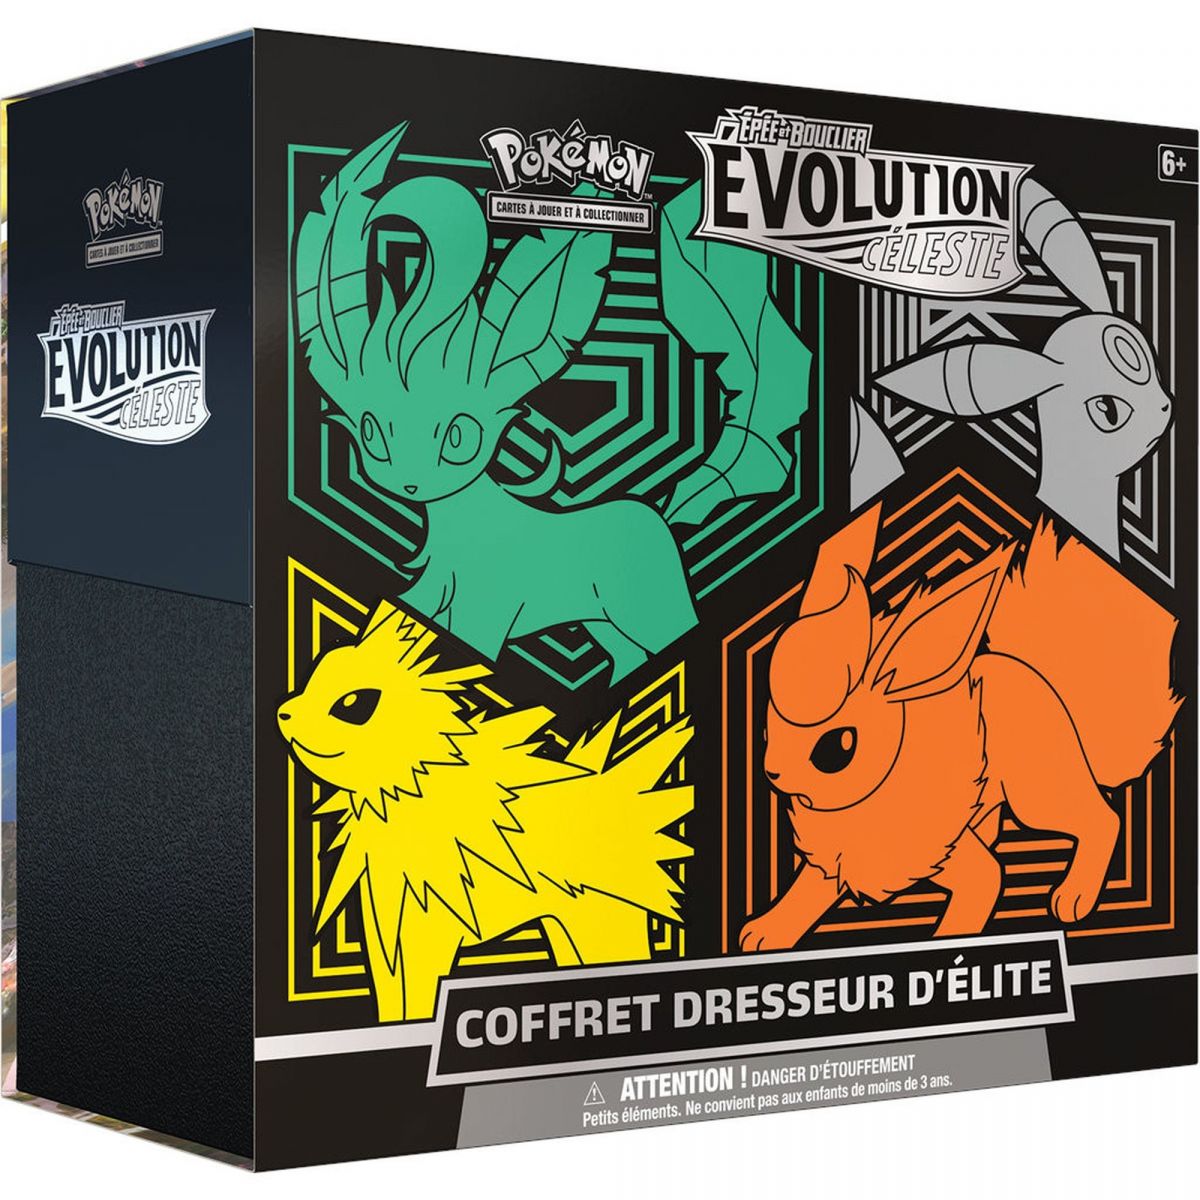 Pokémon - Coffret Dresseur d'Elite - Evolution Céleste V1 -  [EB07] - FR